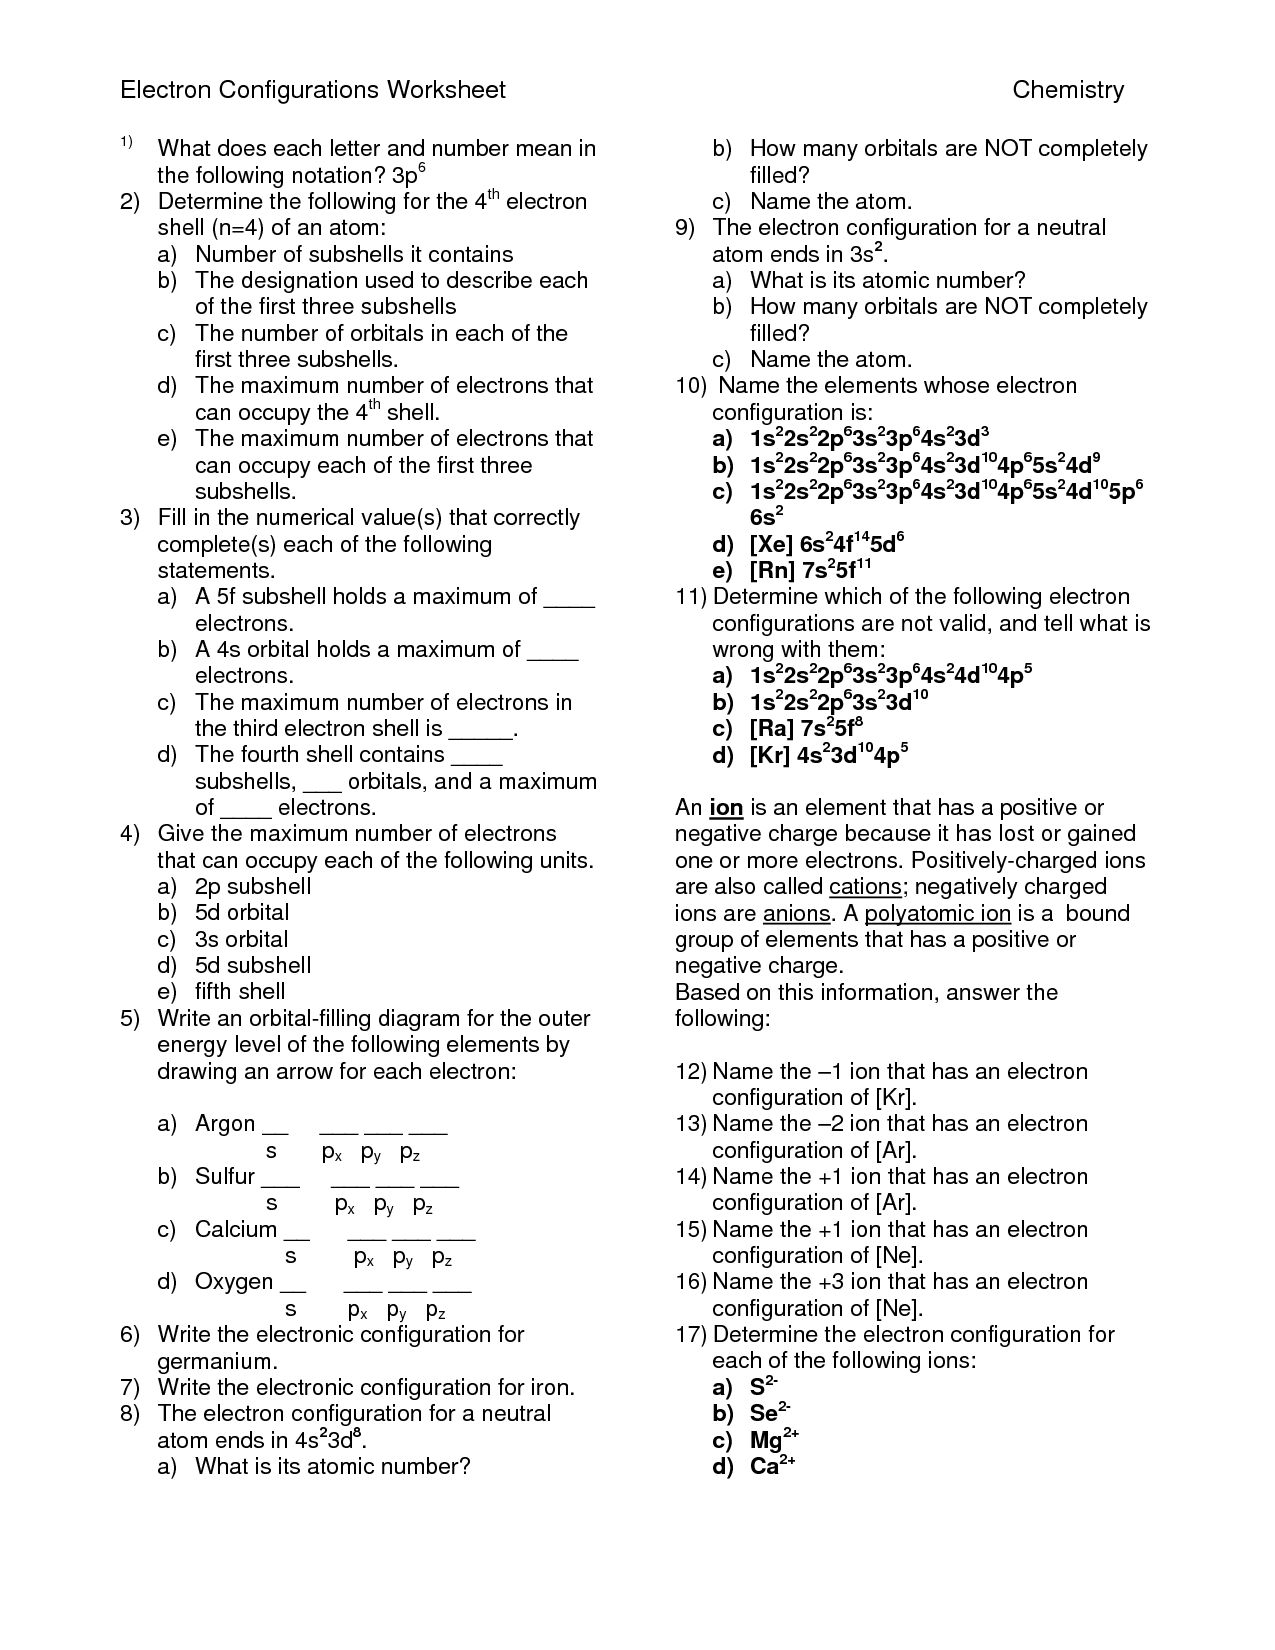 Chemistry Electron Configuration Worksheet Image